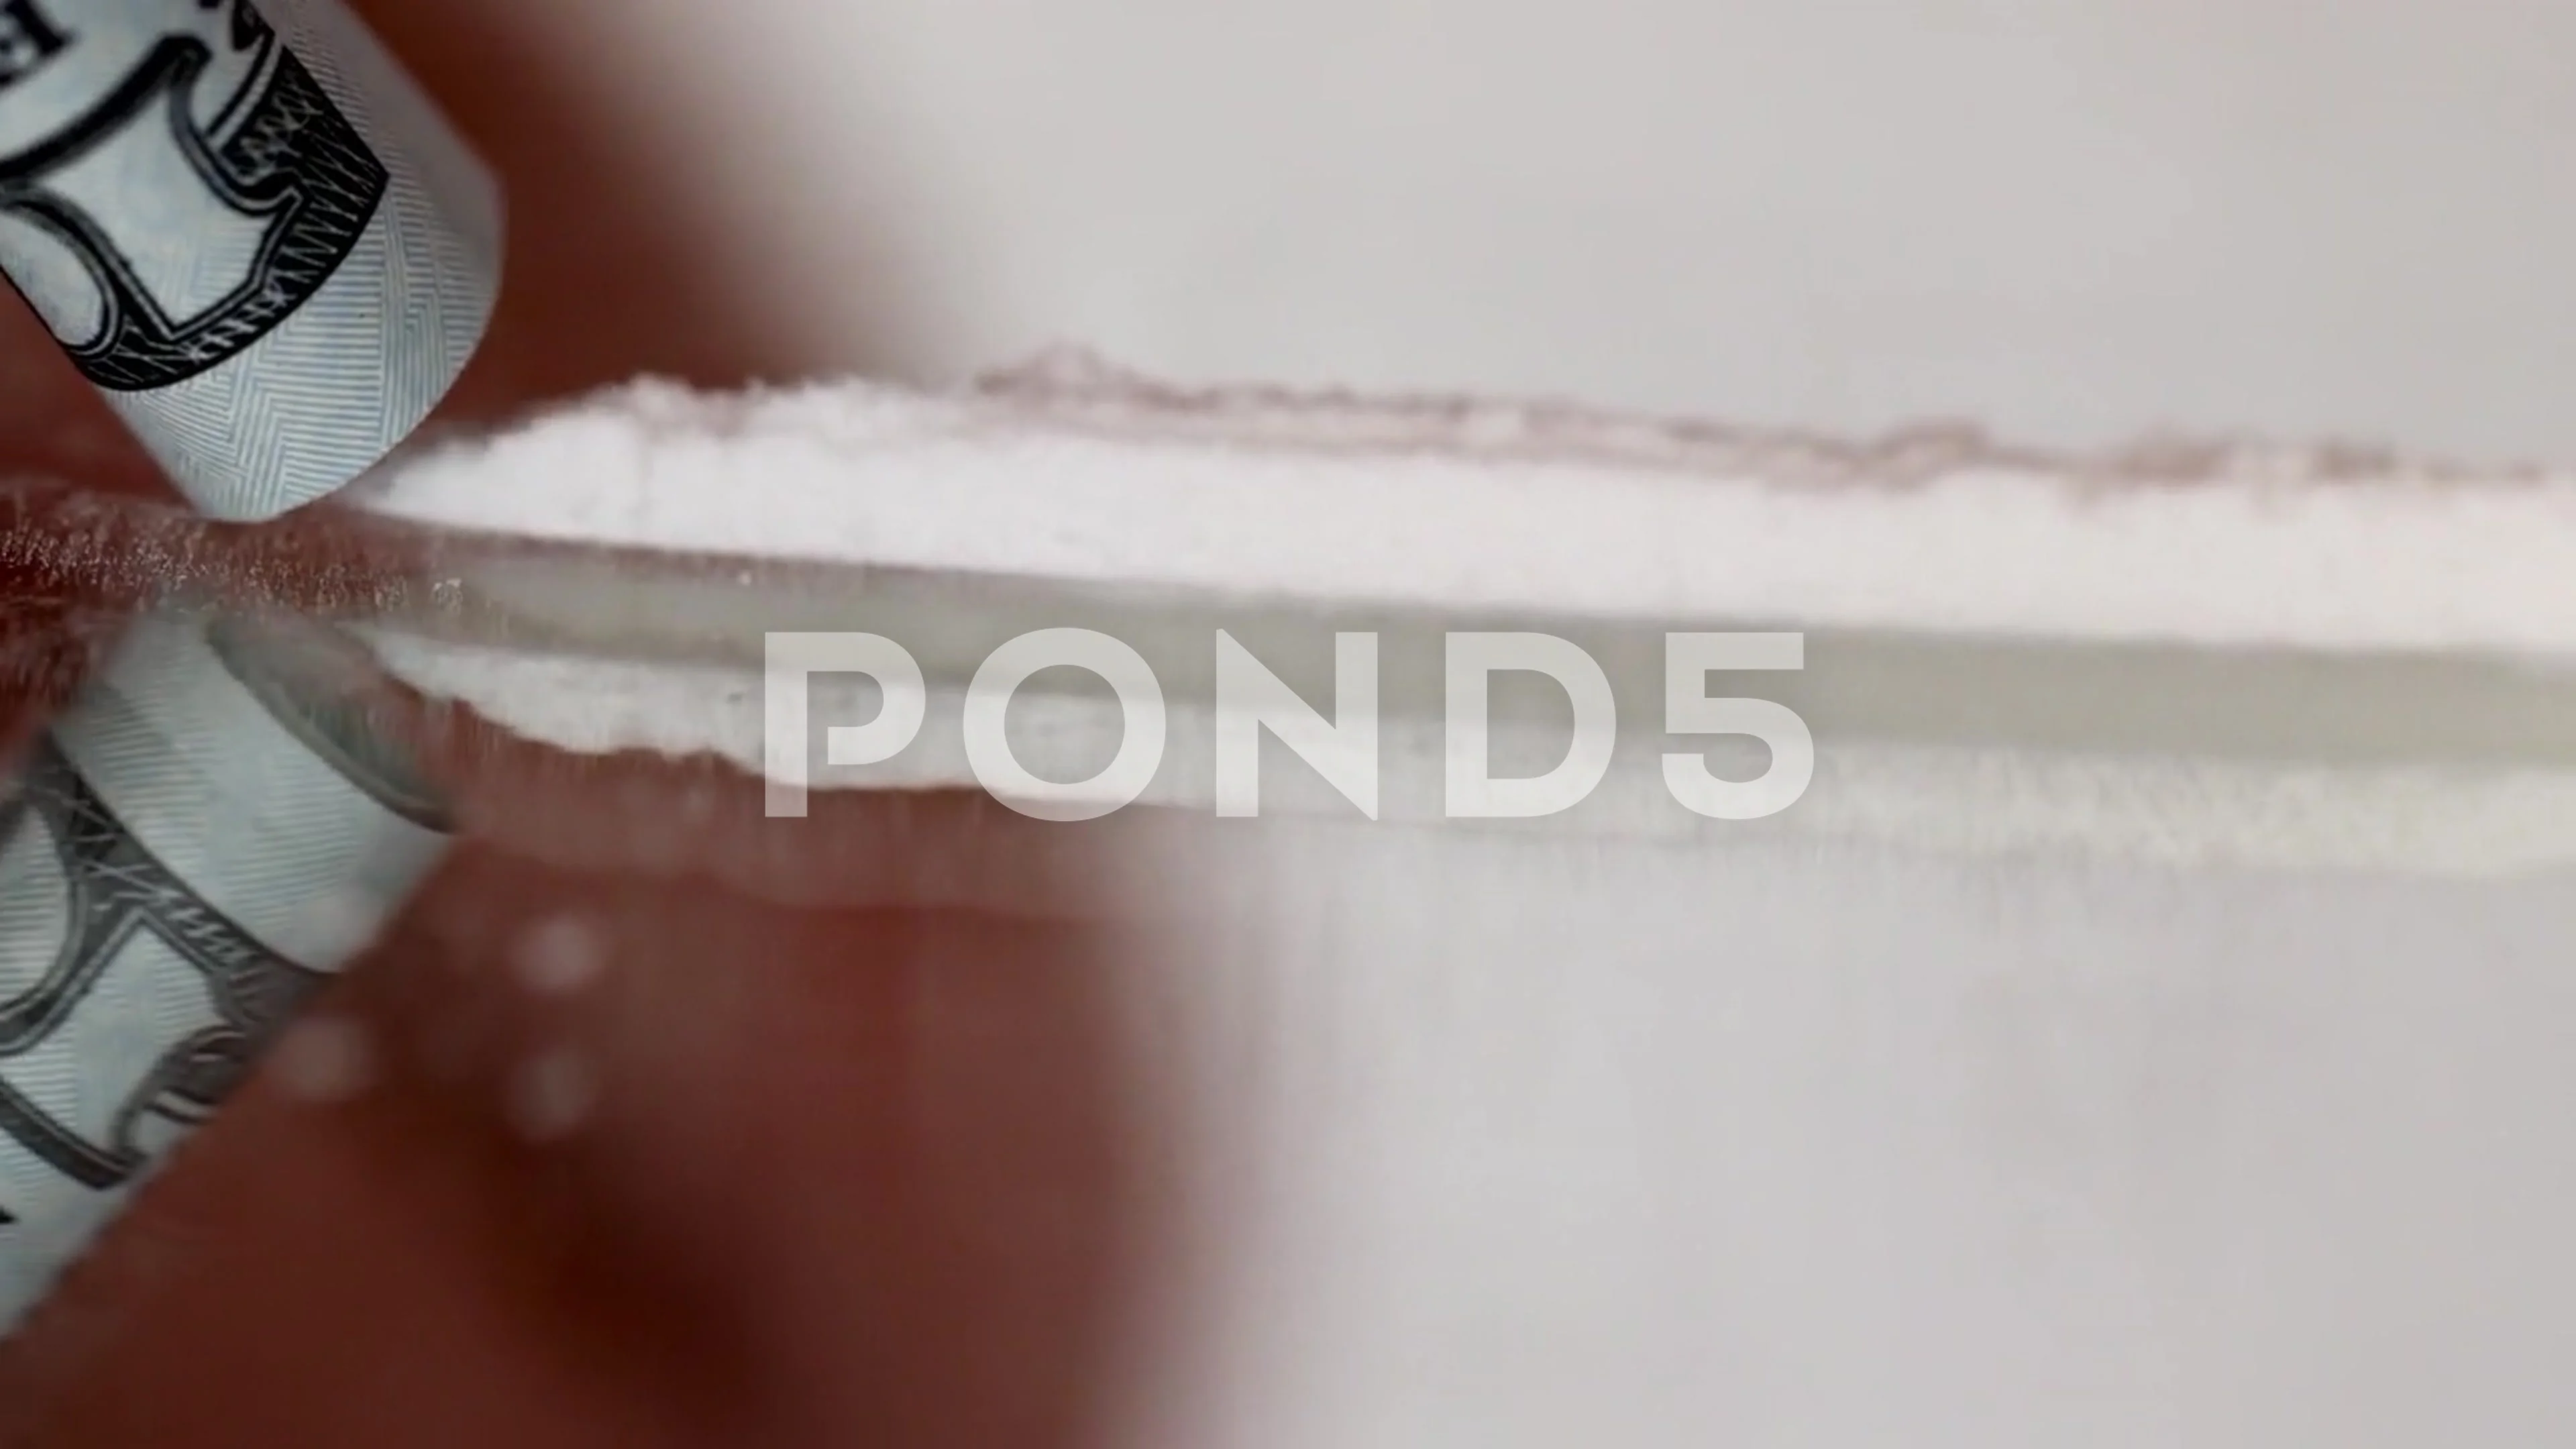 https://images.pond5.com/cocaine-junkie-snorting-line-coke-footage-170423278_prevstill.jpeg